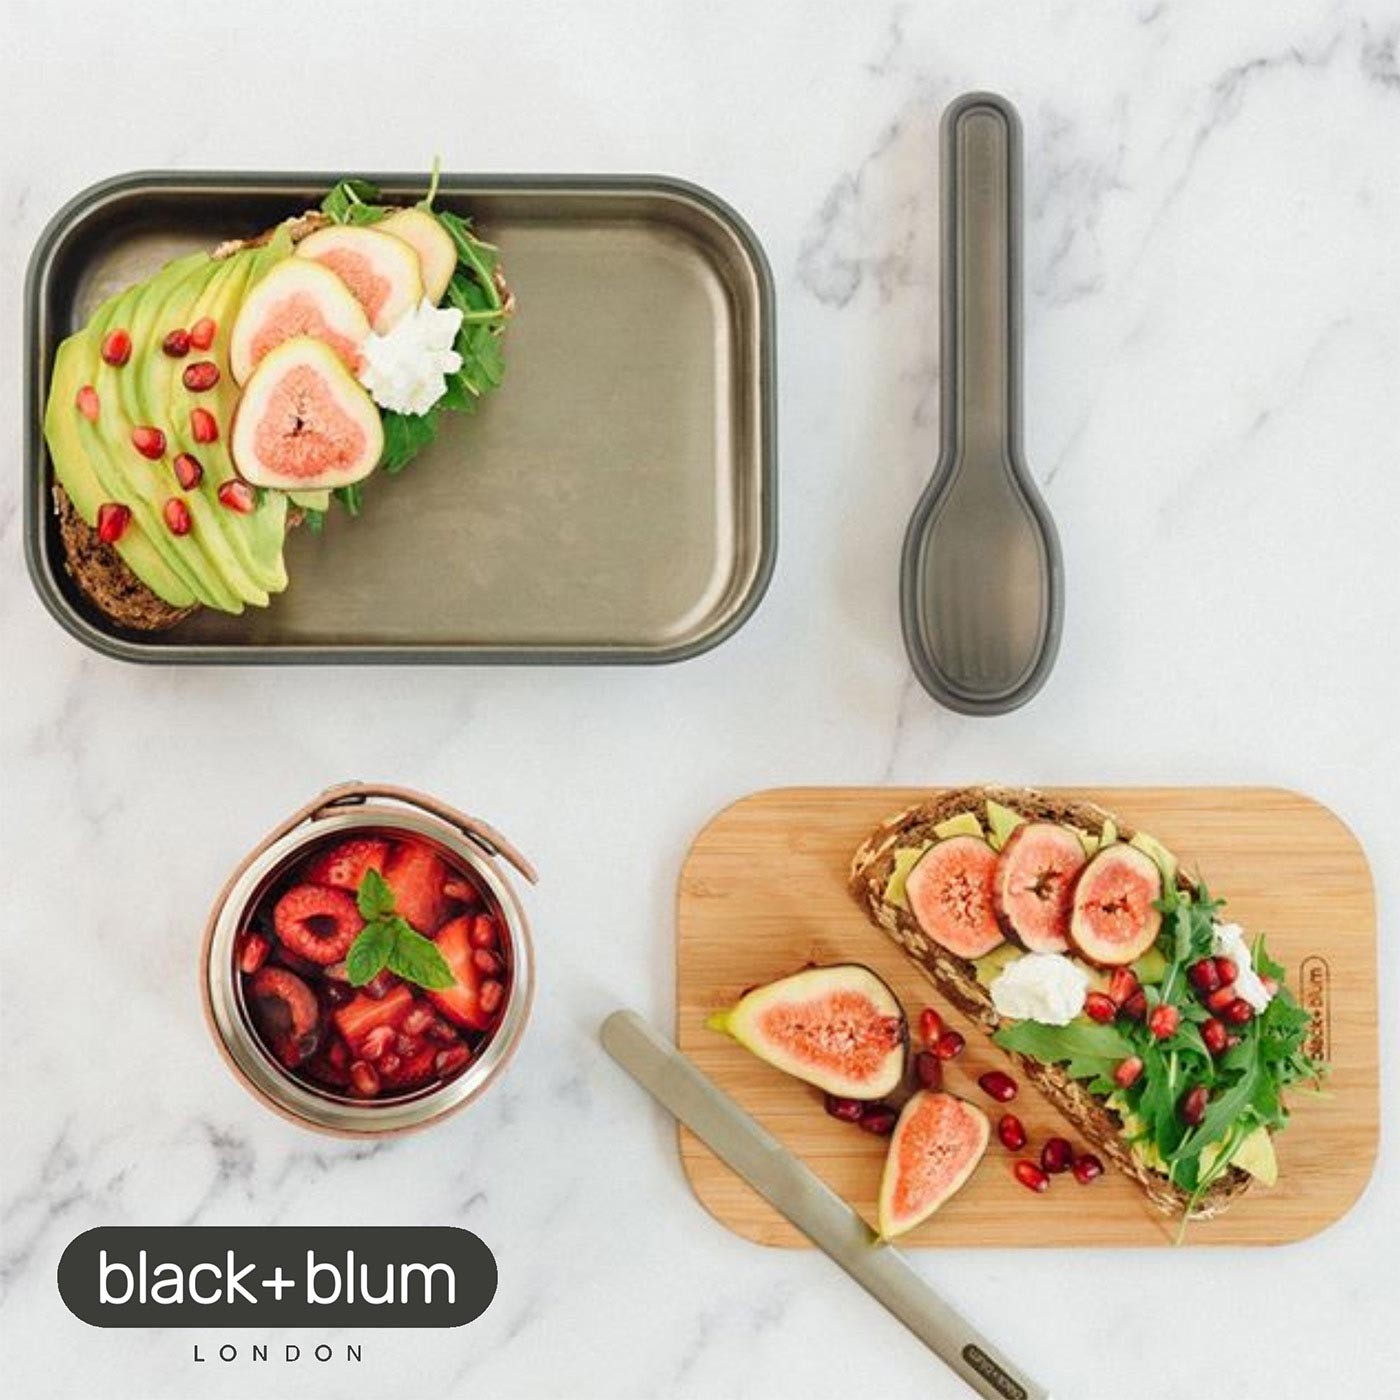 英國black+blum不鏽鋼輕食盒900毫升-橄欖綠，304不鏽鋼盒身、耐熱矽膠束帶邊條，高品質天然竹製上蓋，整體輕量化設計，針對土司三明治優化的盒身尺寸。